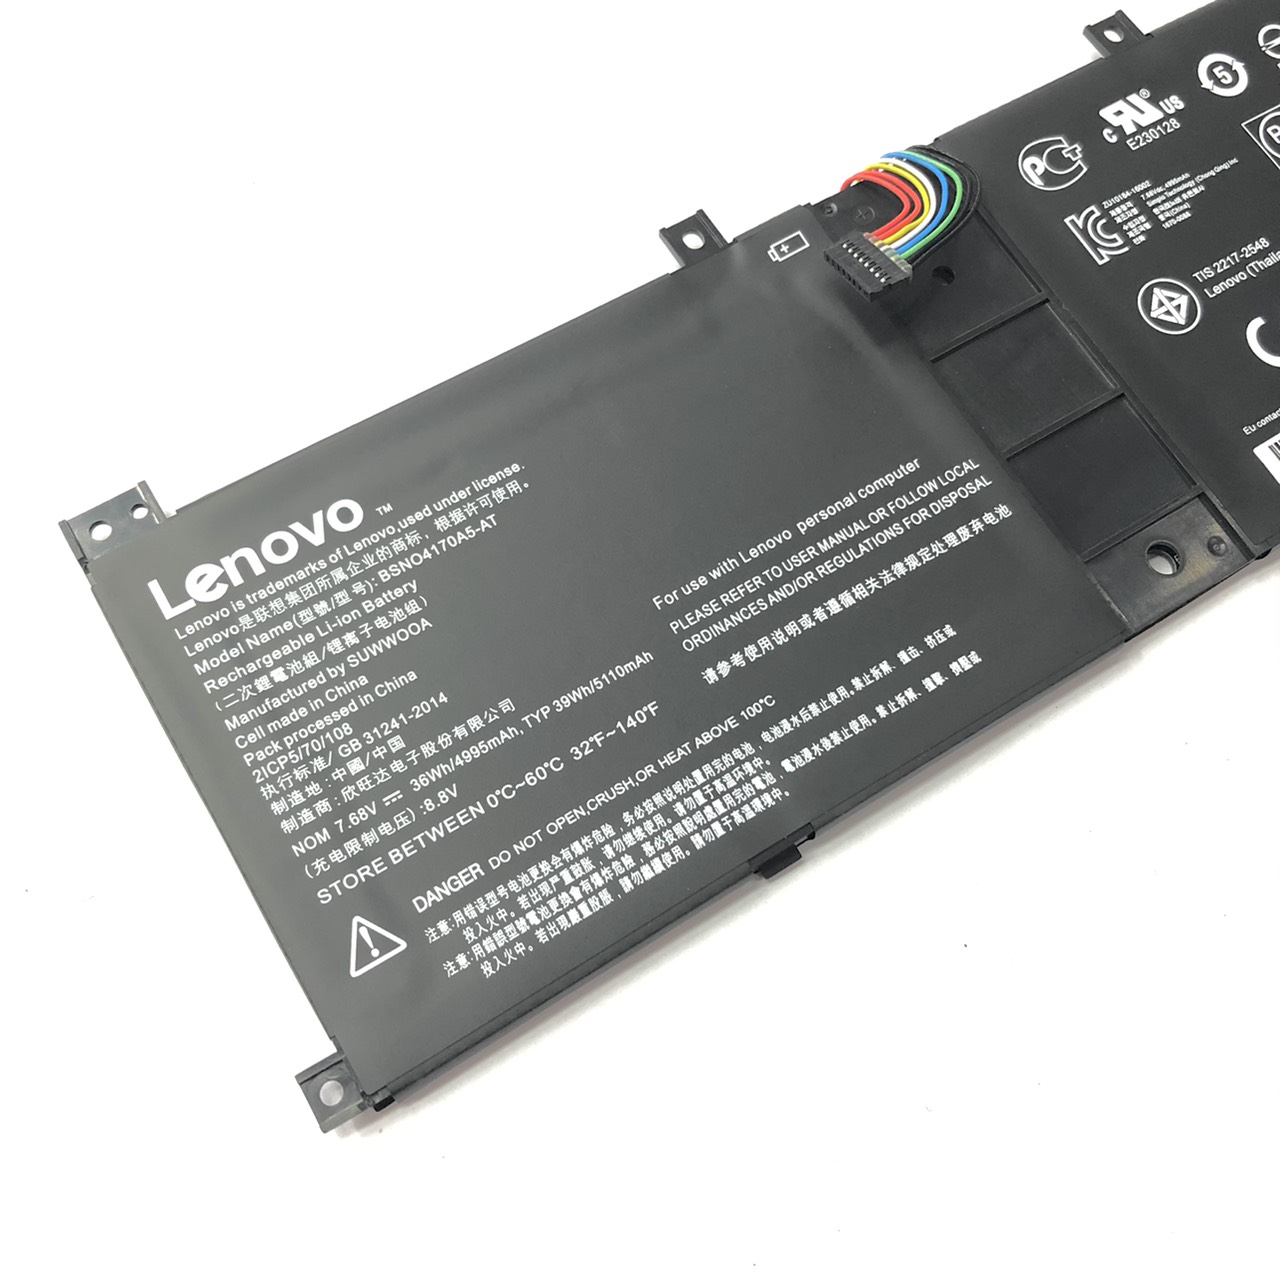 คำอธิบายเพิ่มเติมเกี่ยวกับ แบตเตอรี่ โน๊ตบุ๊ค Battery Notebook Lenovo Miix 520-12IKB 510-12IKB Series 7.68V